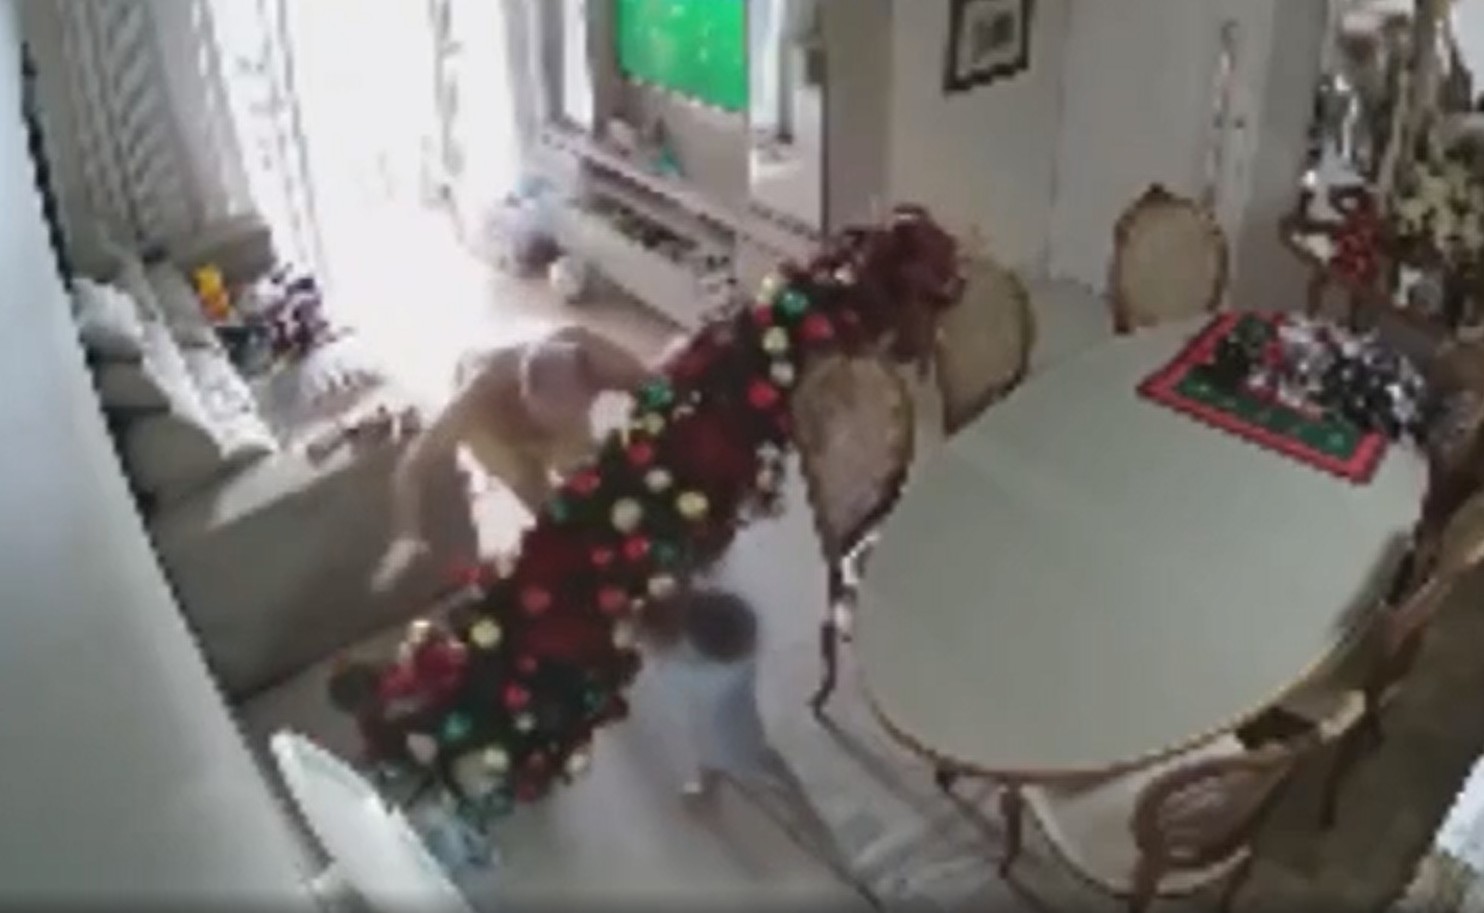 Avô tenta evitar que neto derrube árvore de Natal, leva tombo e cena viraliza na internet: 'Ganhou uma repercussão muito grande'